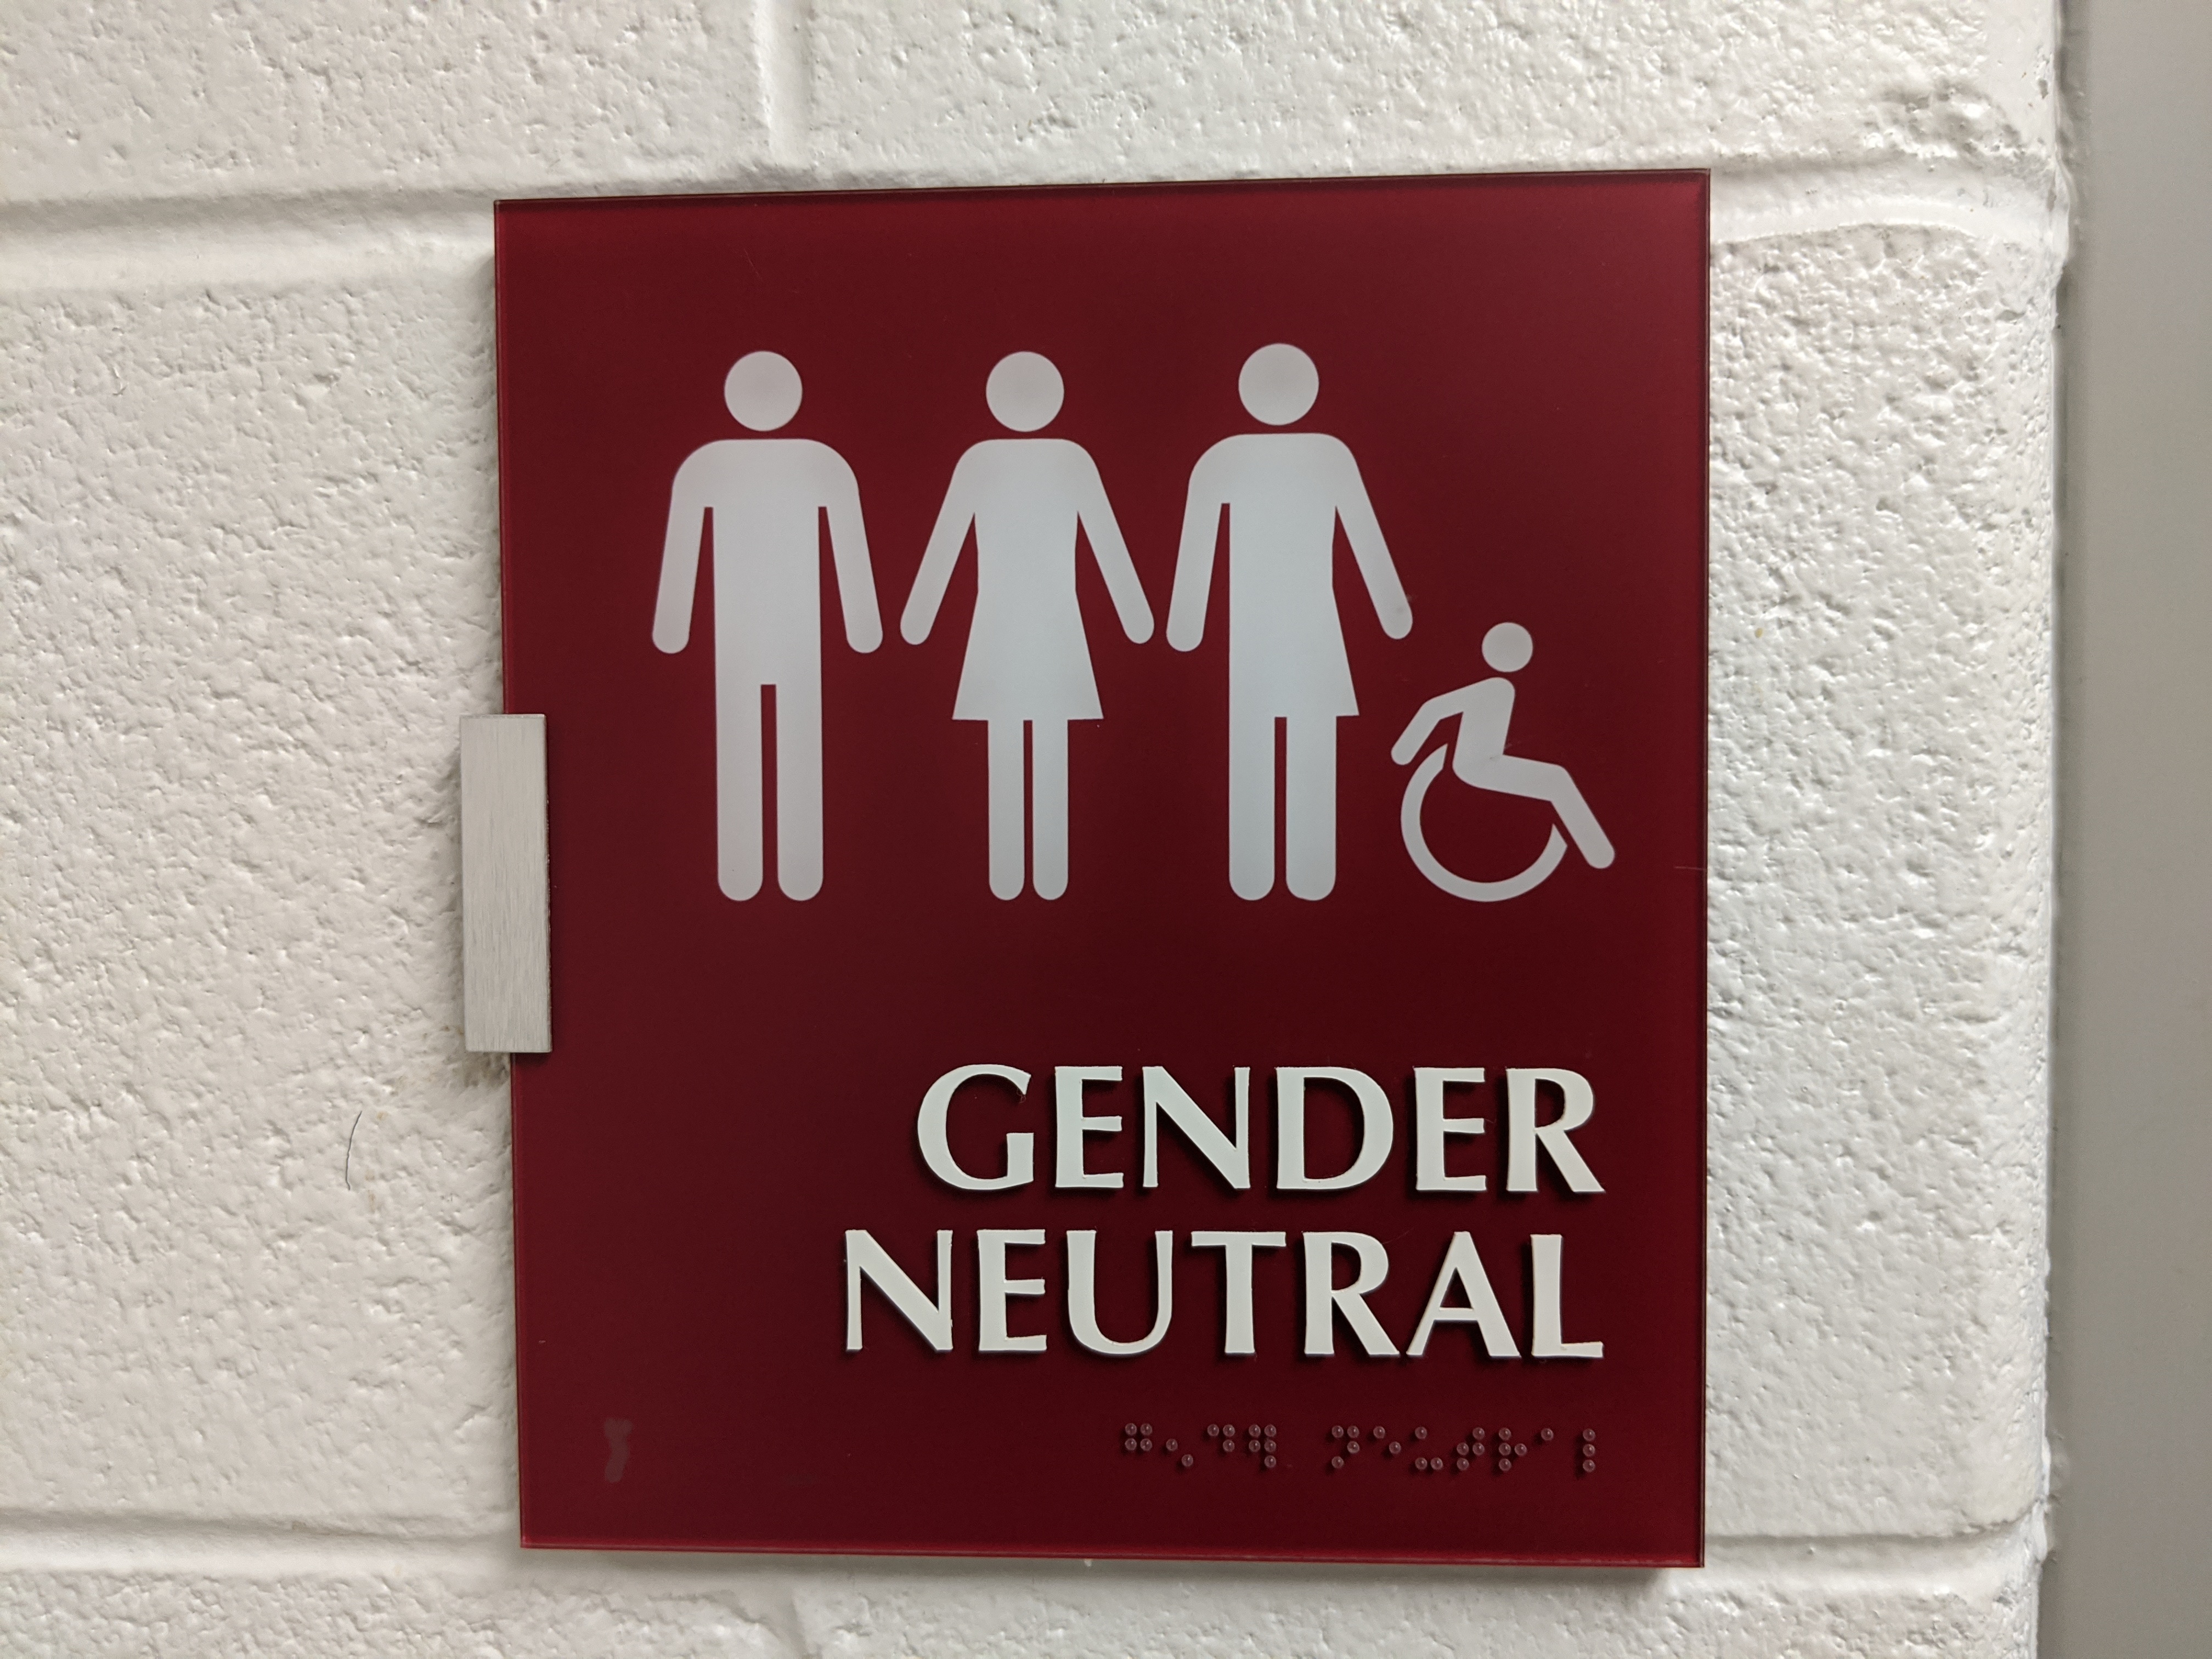 Gender neutral restroom sign at PVCC.